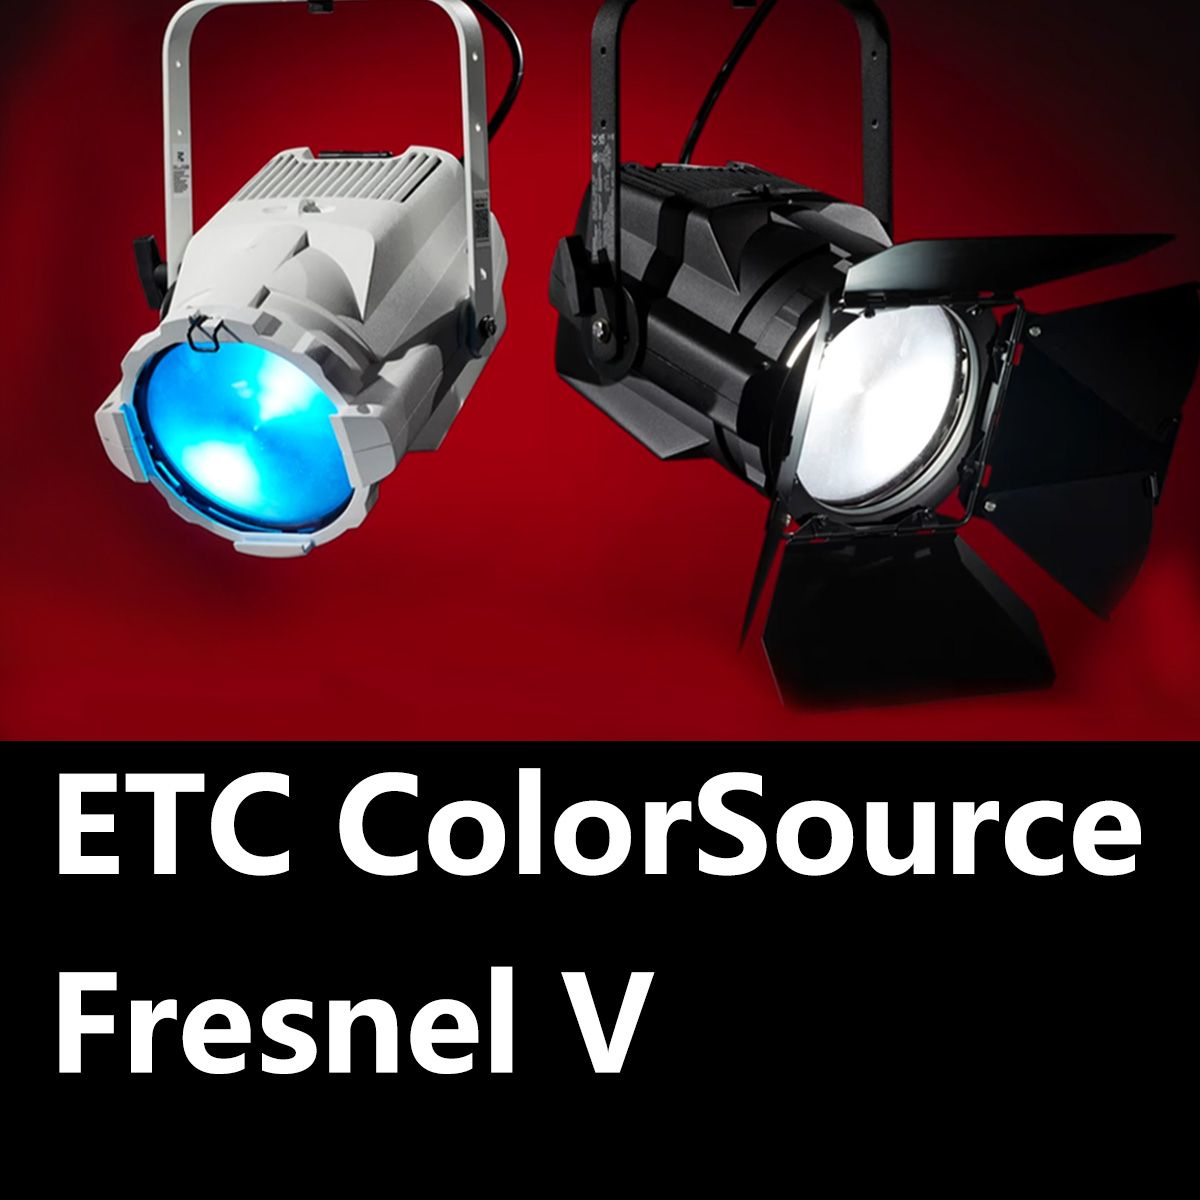 ETC ColorSource Fresnel V